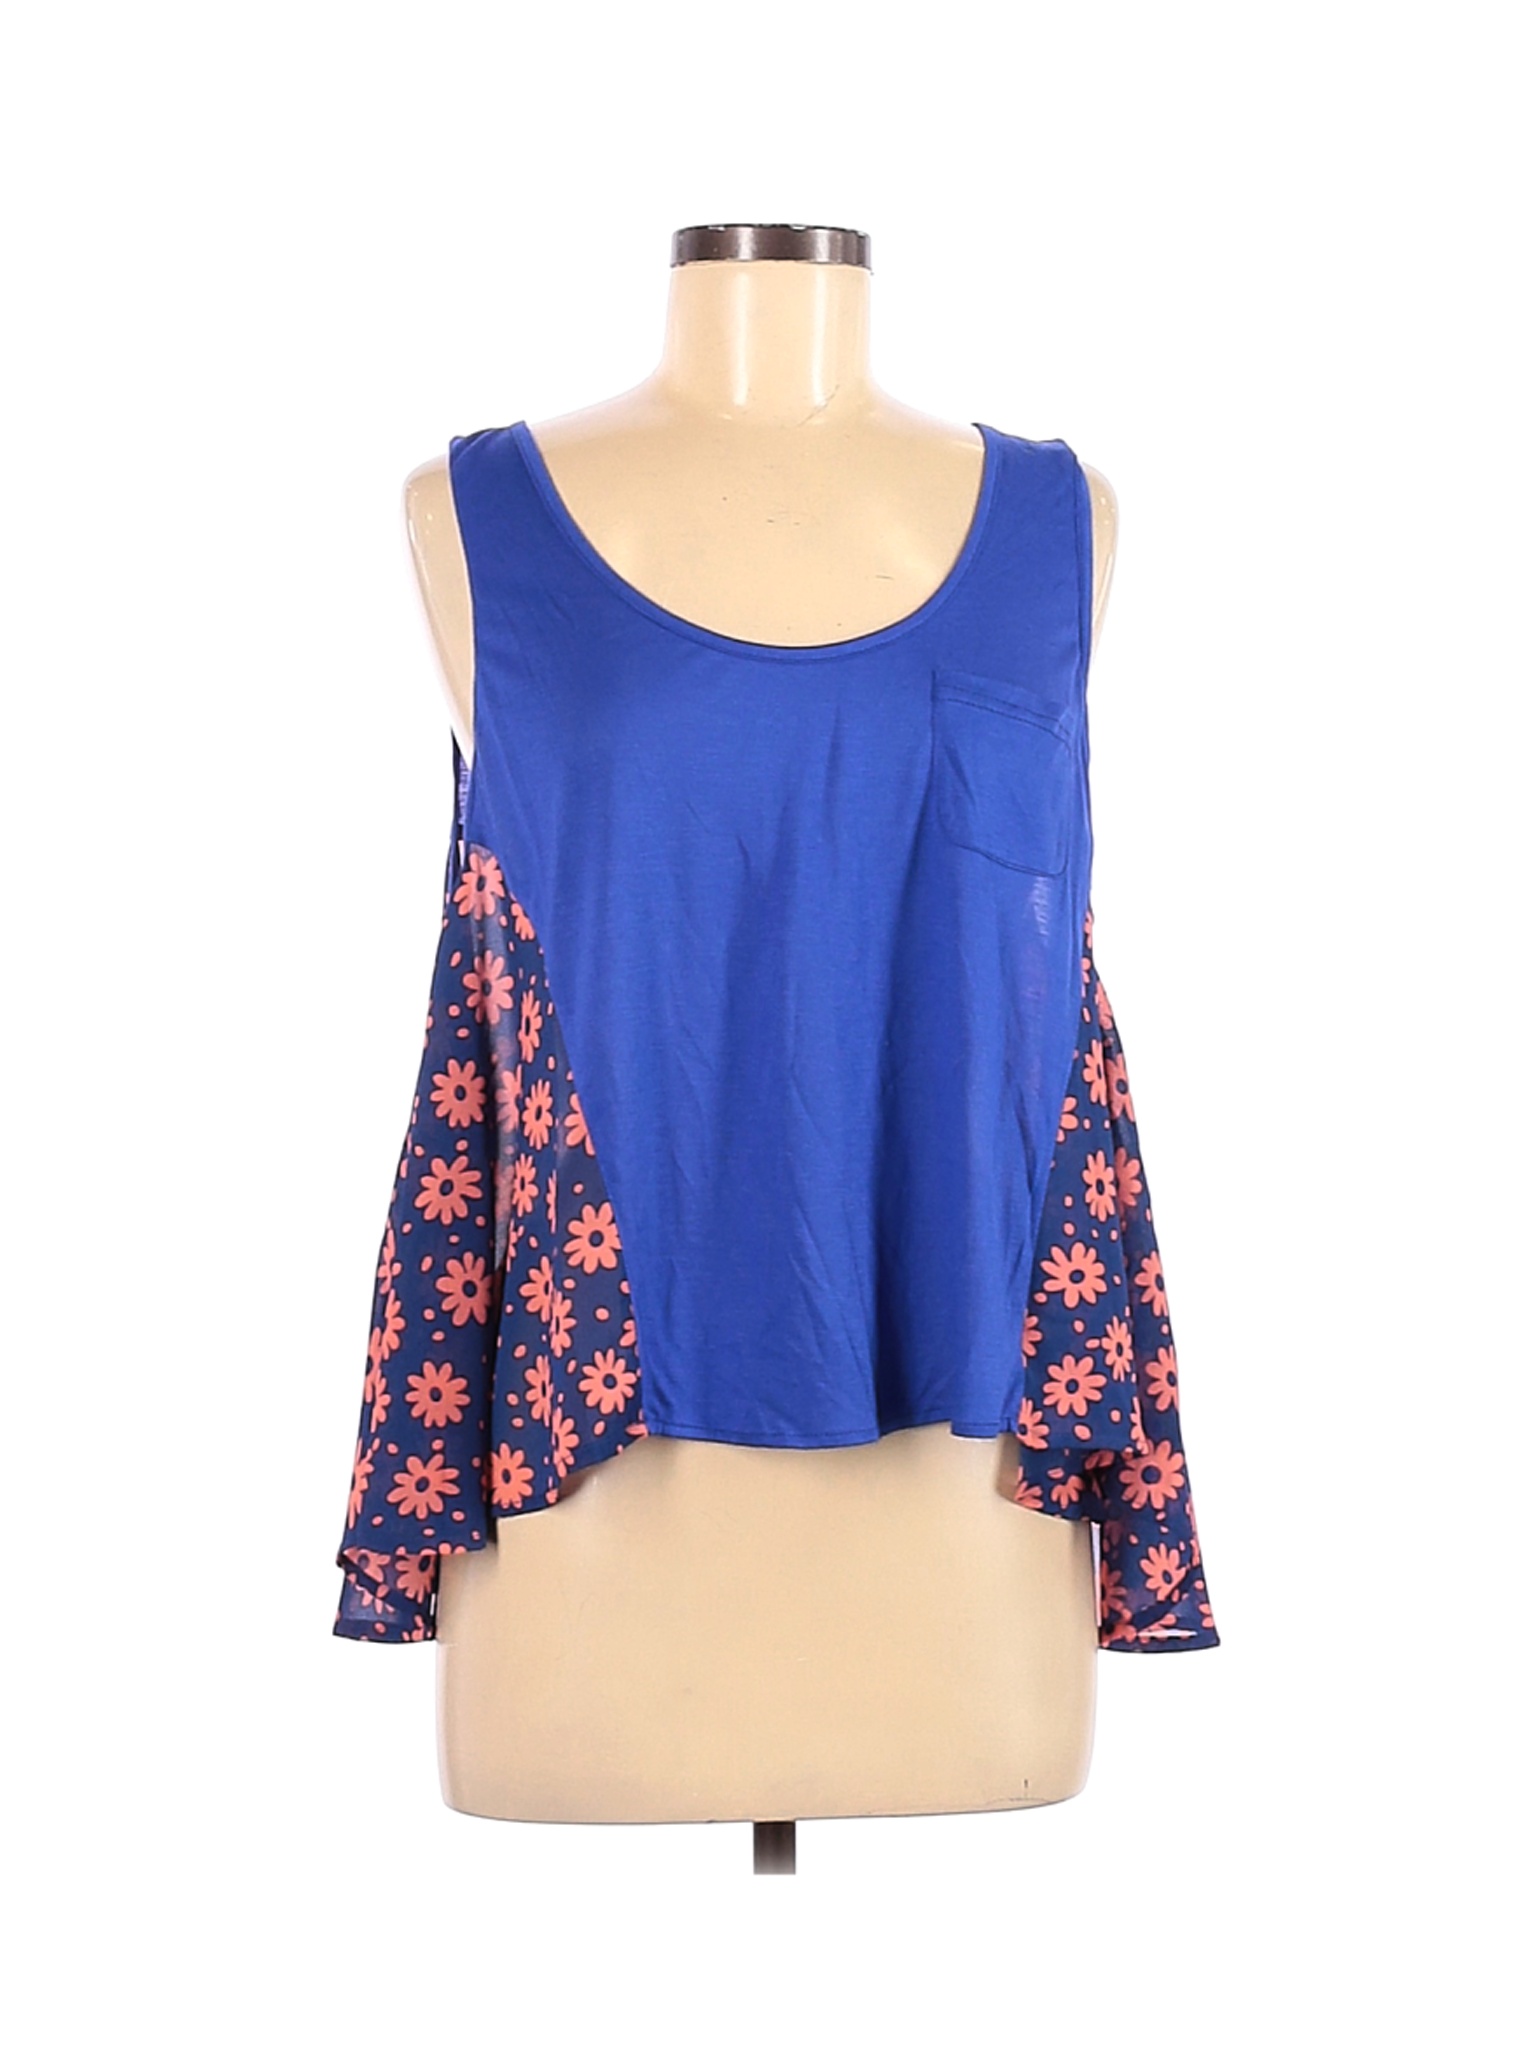 Umgee Women Blue Short Sleeve Top M | eBay